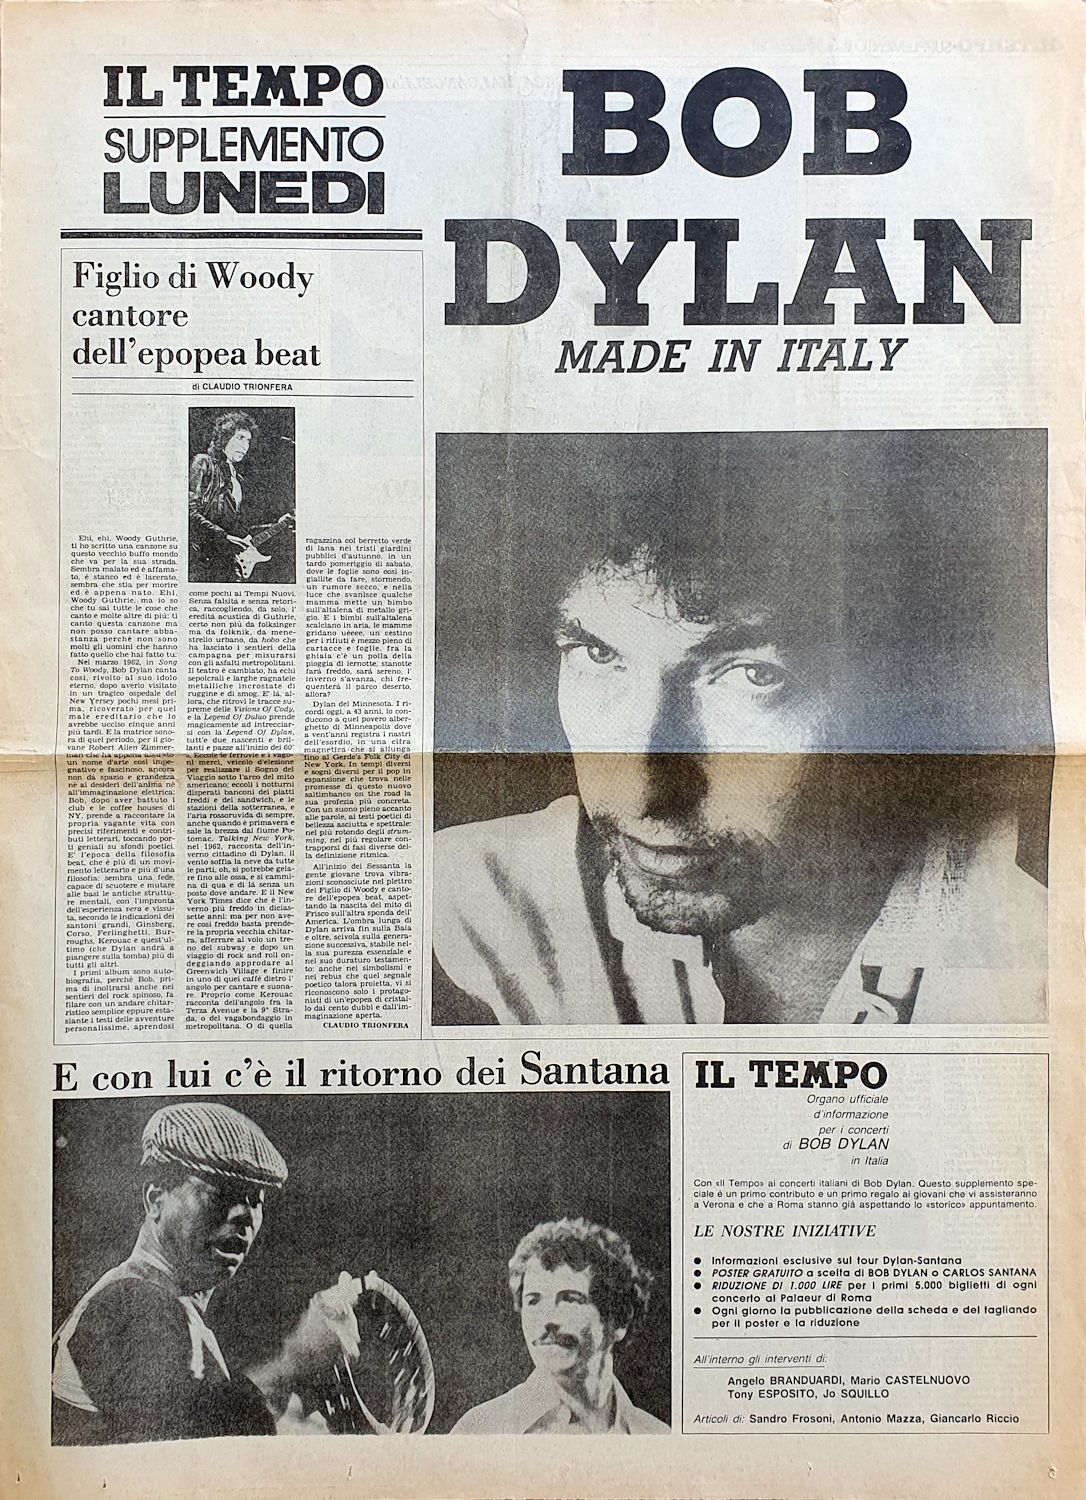 il tempo supplemento lunedi Bob Dylan cover story